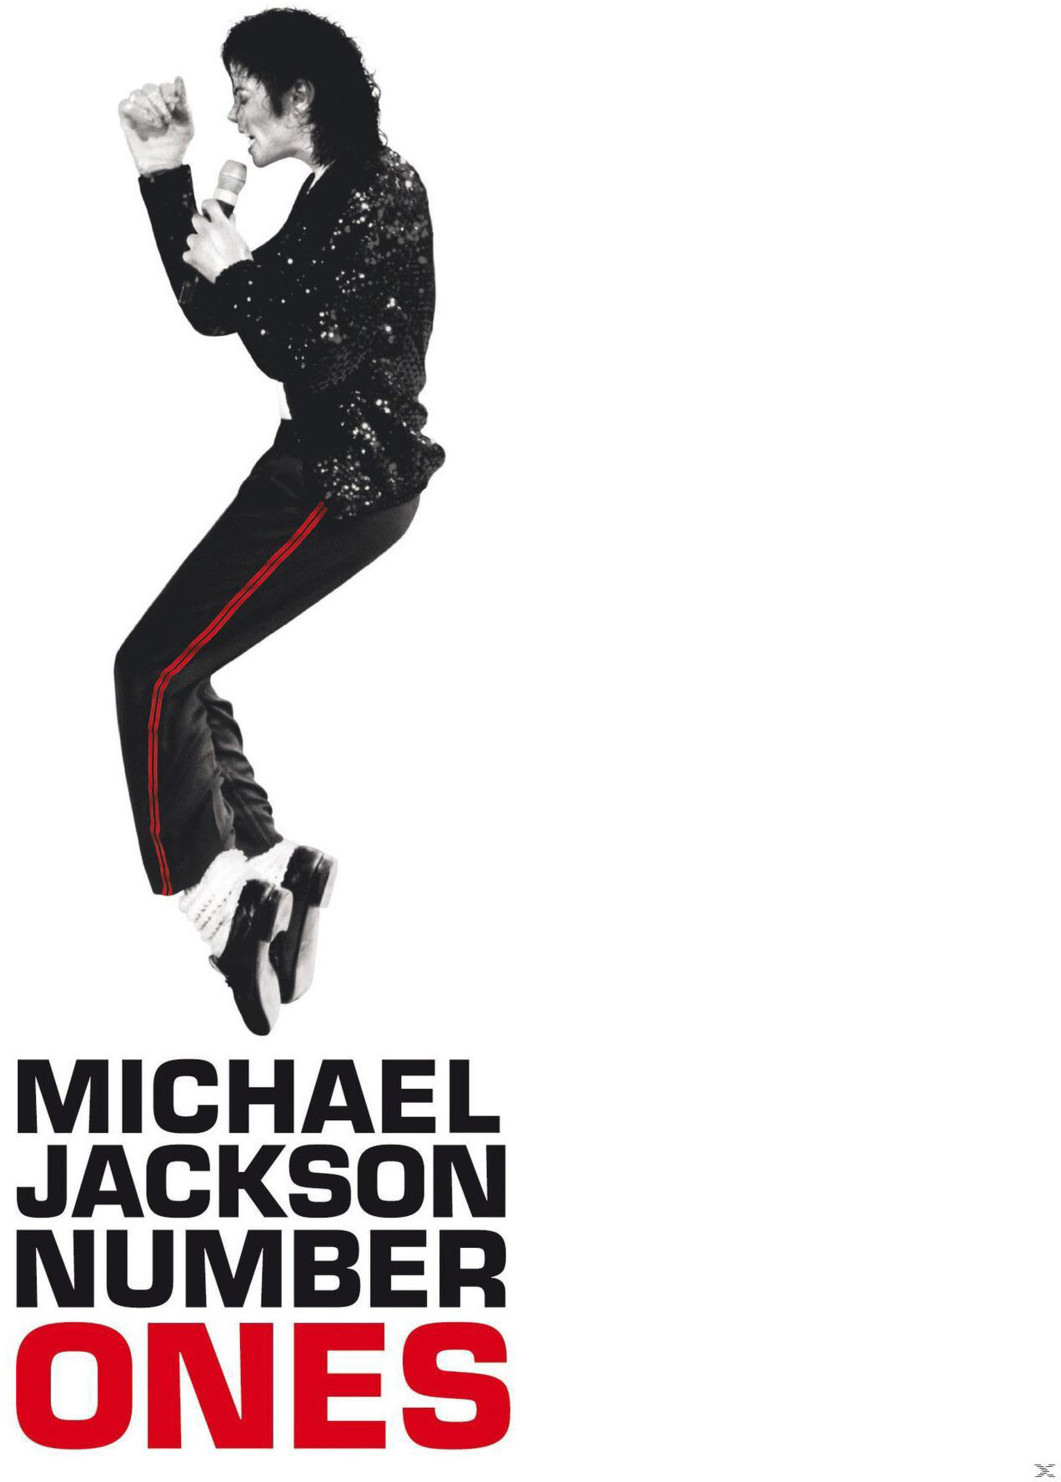 マイケル・ジャクソン Number Ones - ミュージック